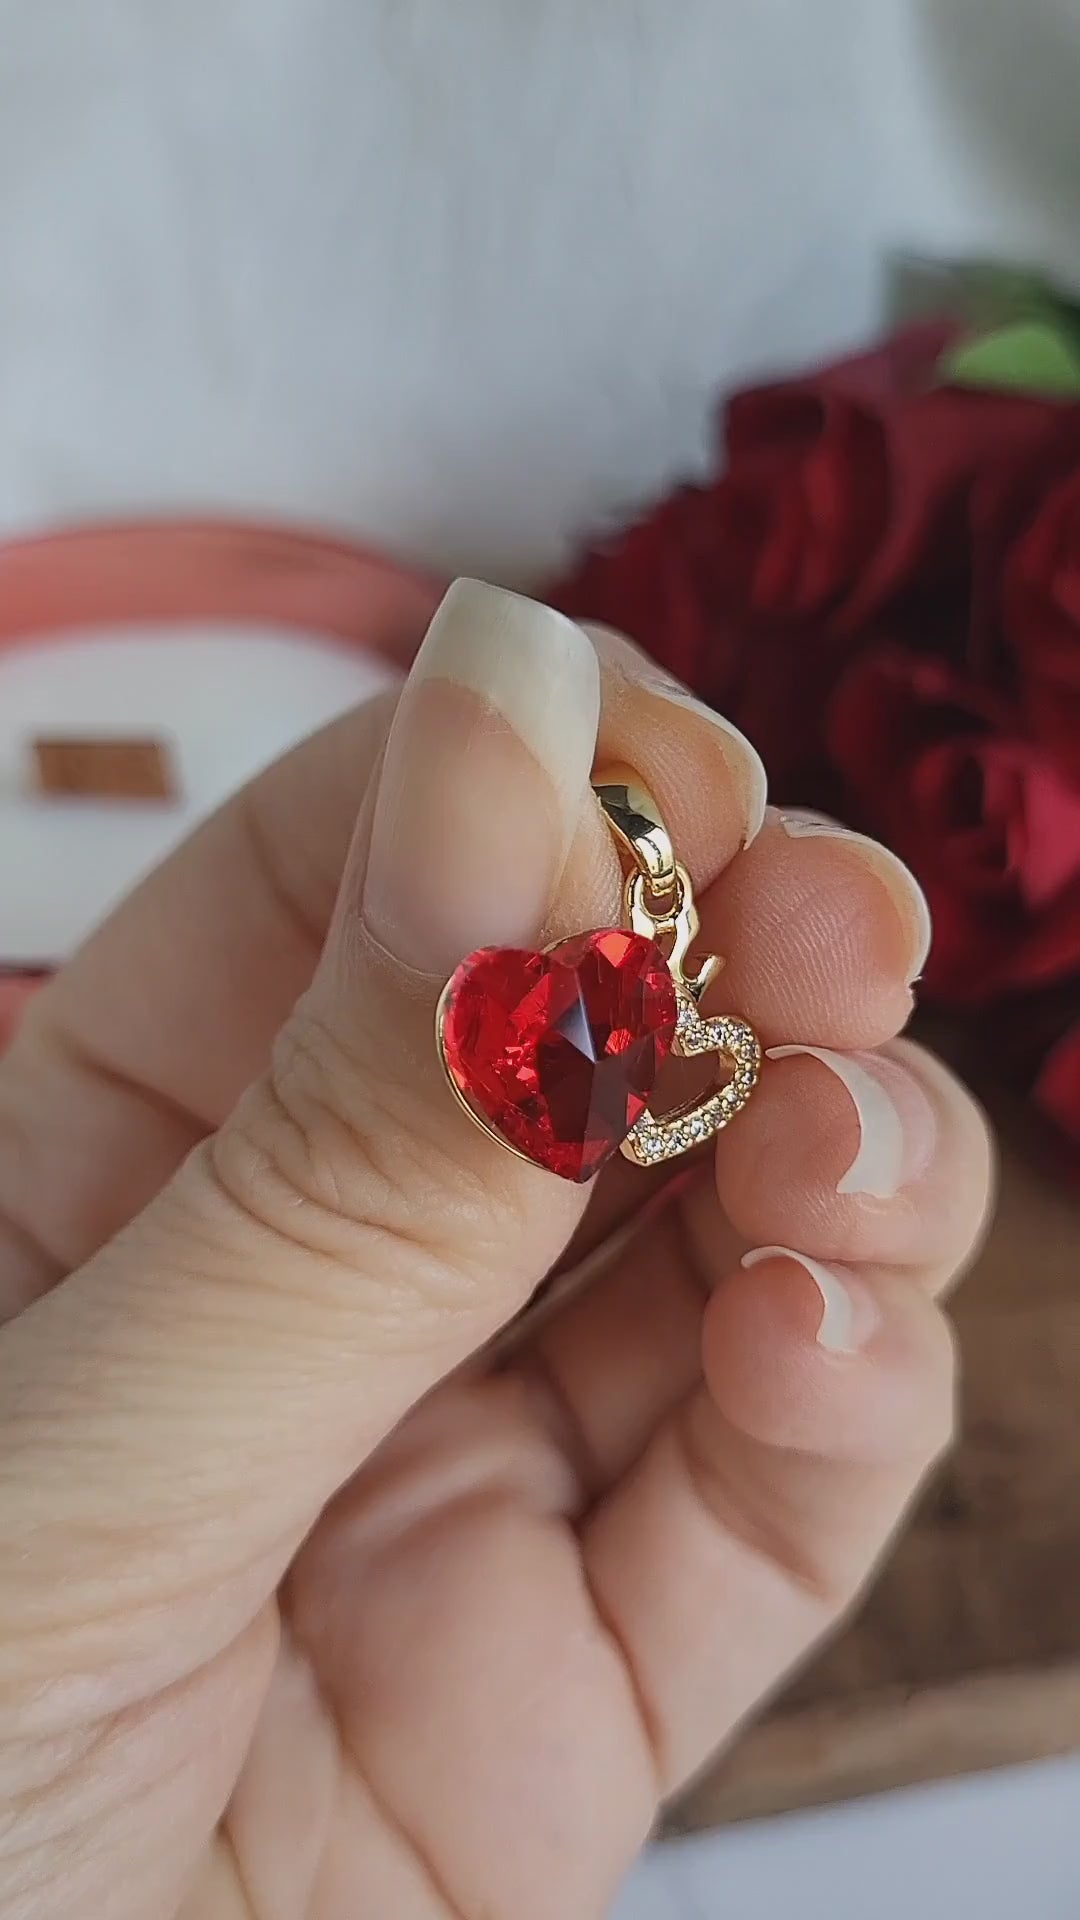 Ciondolo Bijoux dorato con doppio cuore, uno rosso ed uno con finti zirconi luminosi, più piccola corona.